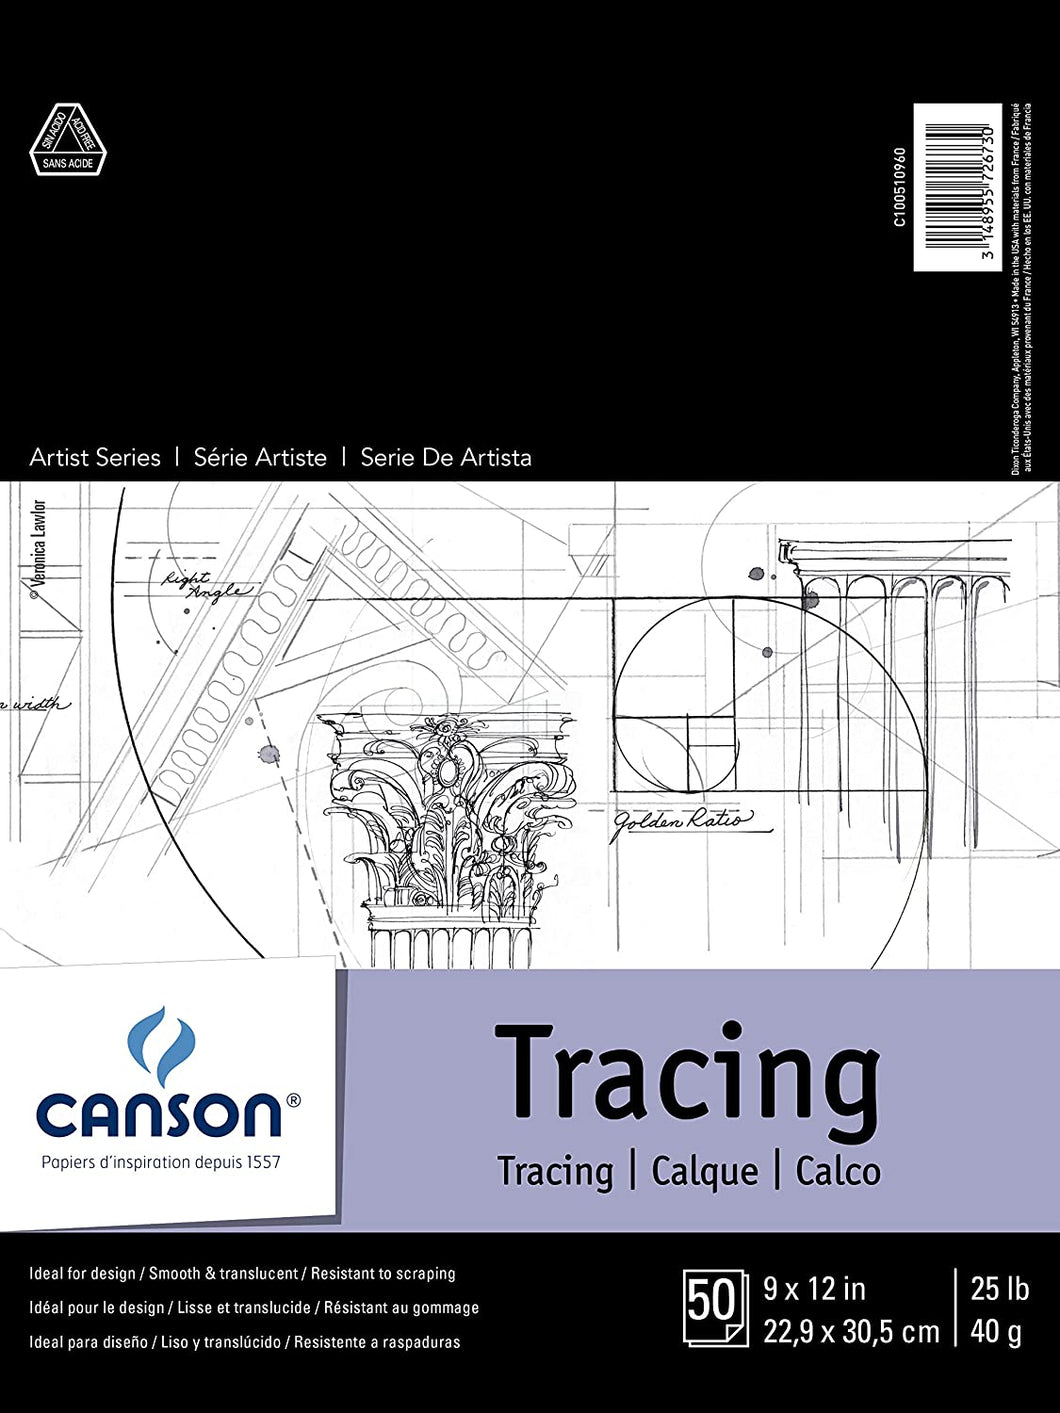 CANSON - Artist Series Tracing Pads (Libretas de Hojas de Calco) - 25lb - 50 hojas